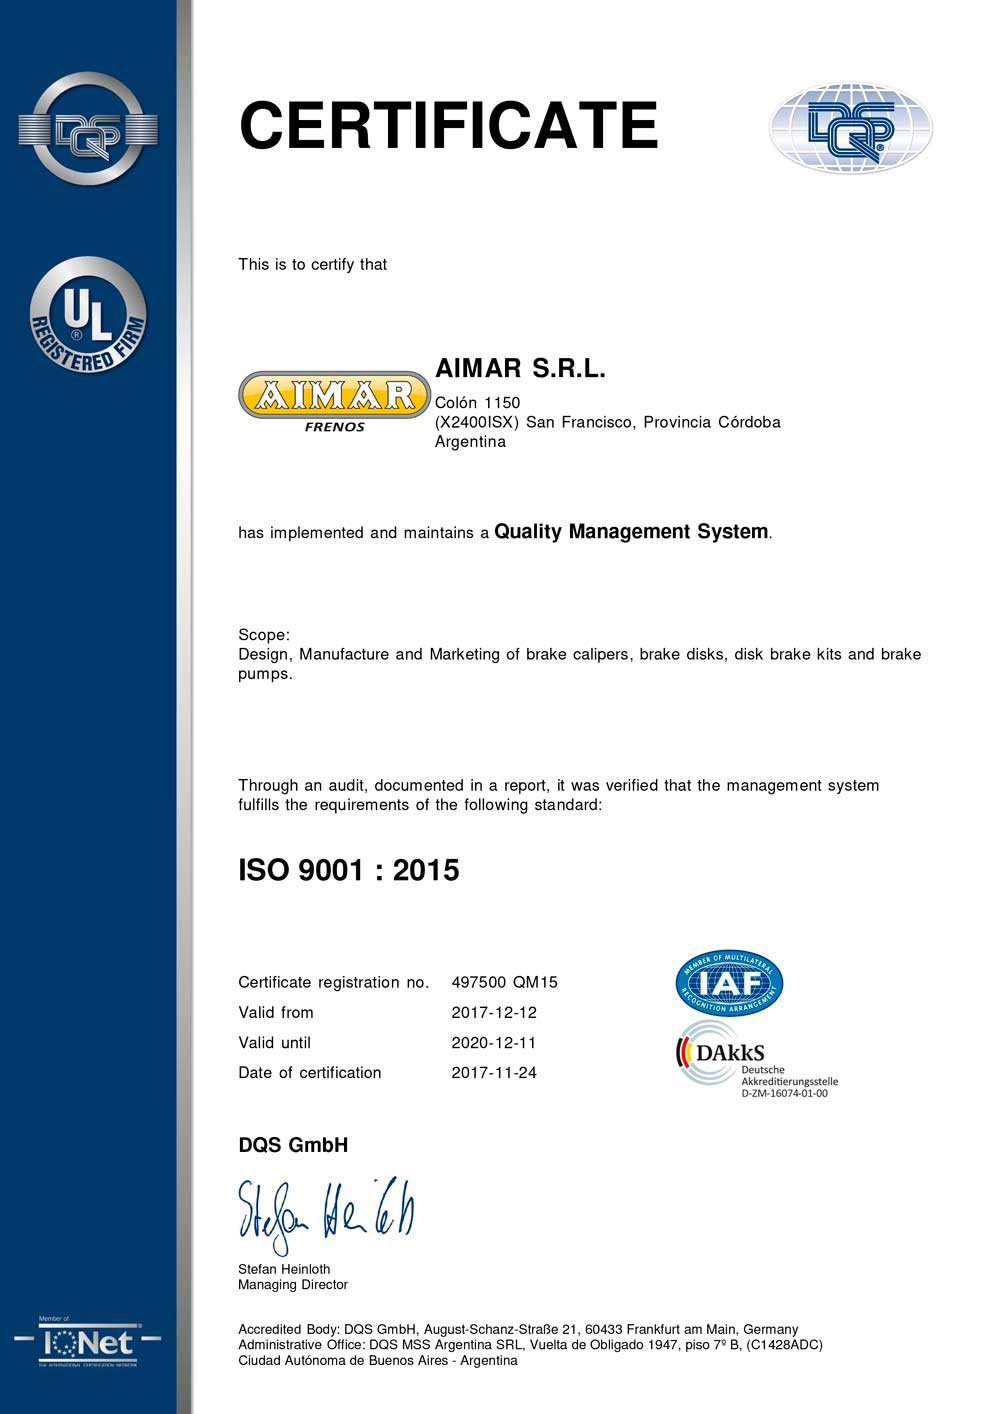 CERTIFICADO ISO 9001